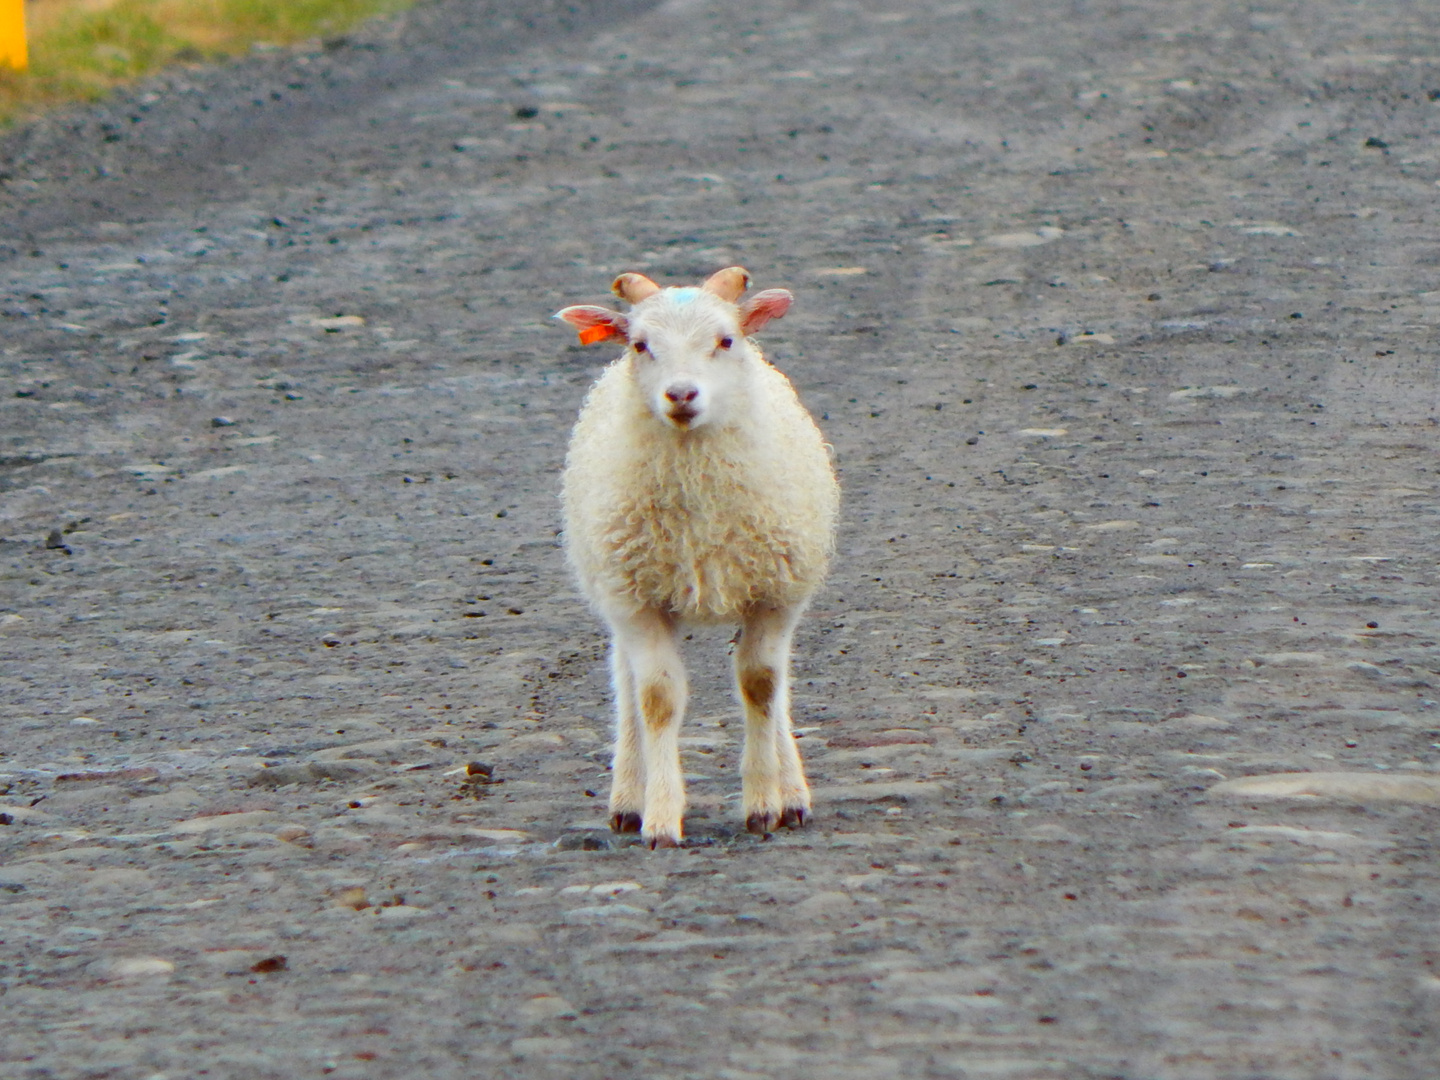 Island - Natur pur, neugieriges Lamm